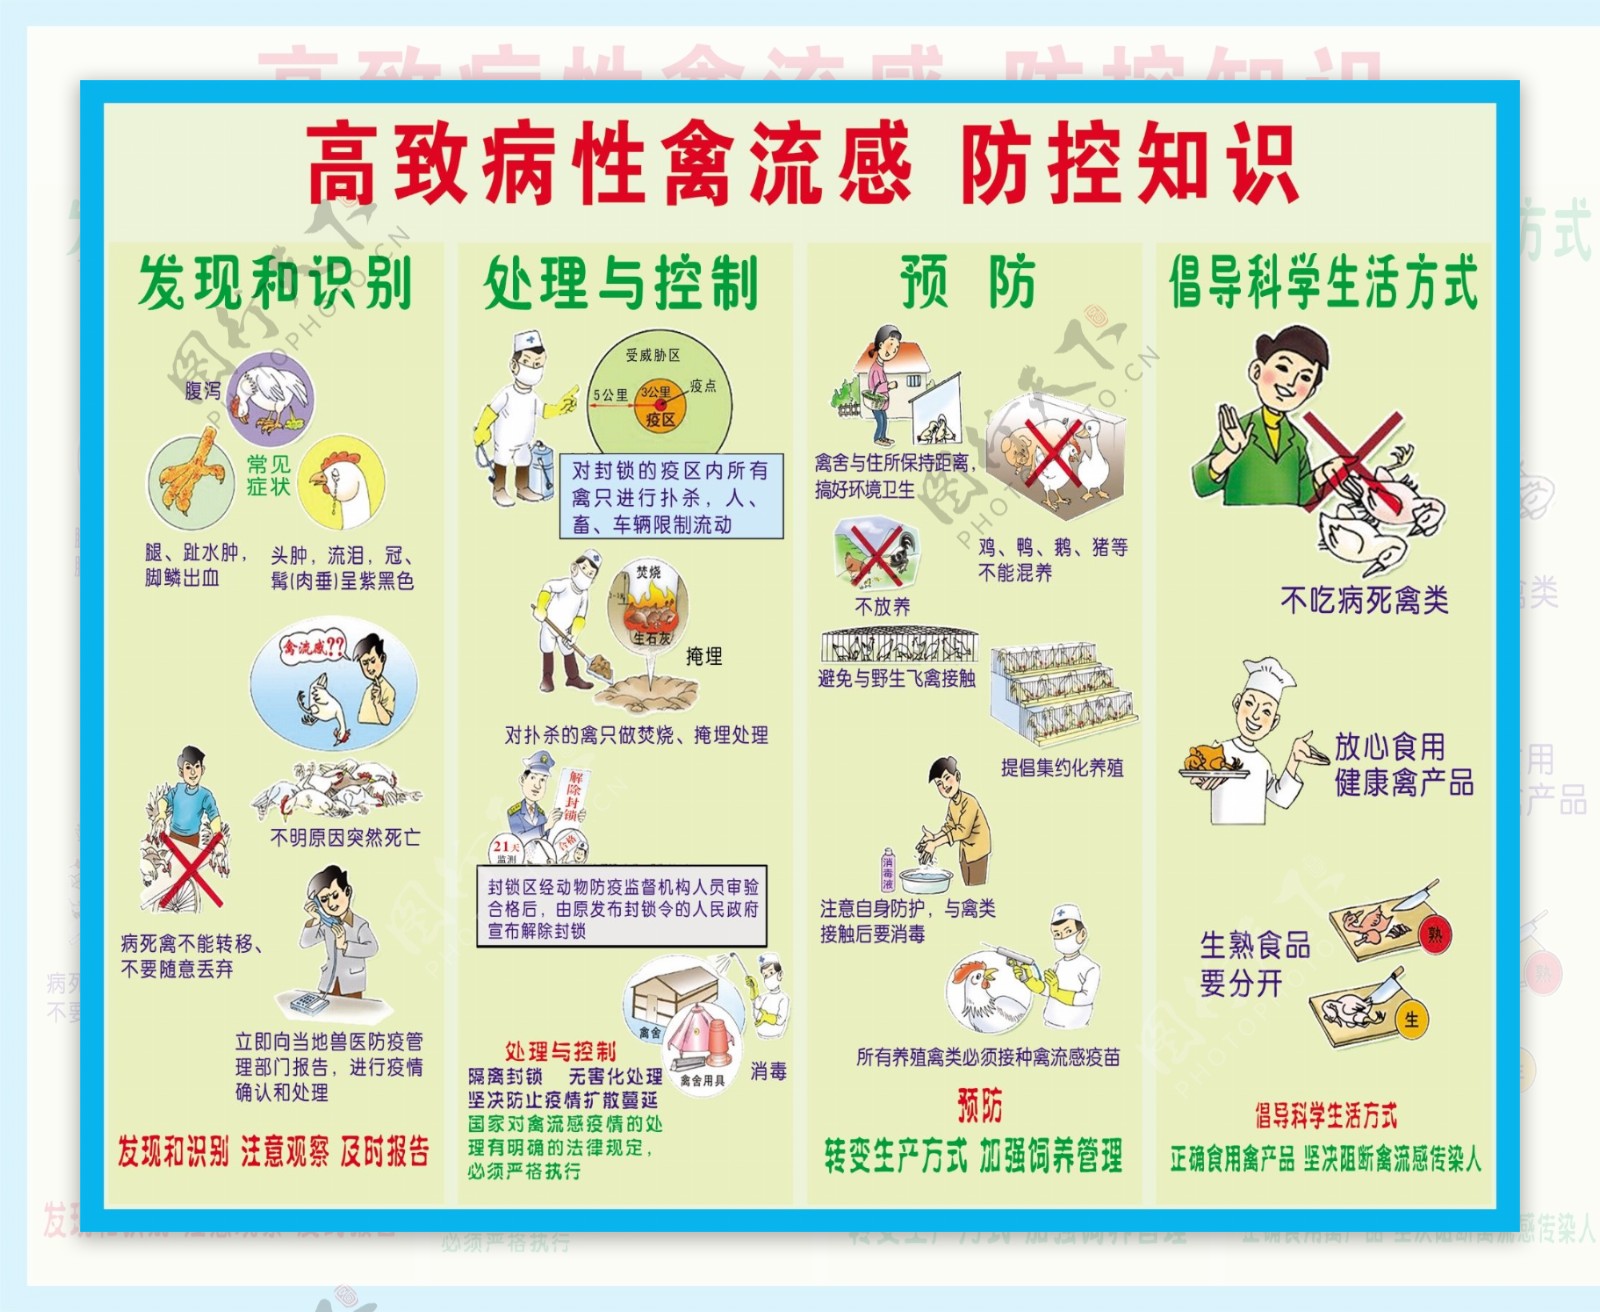 高致病性禽流感防控知识图片